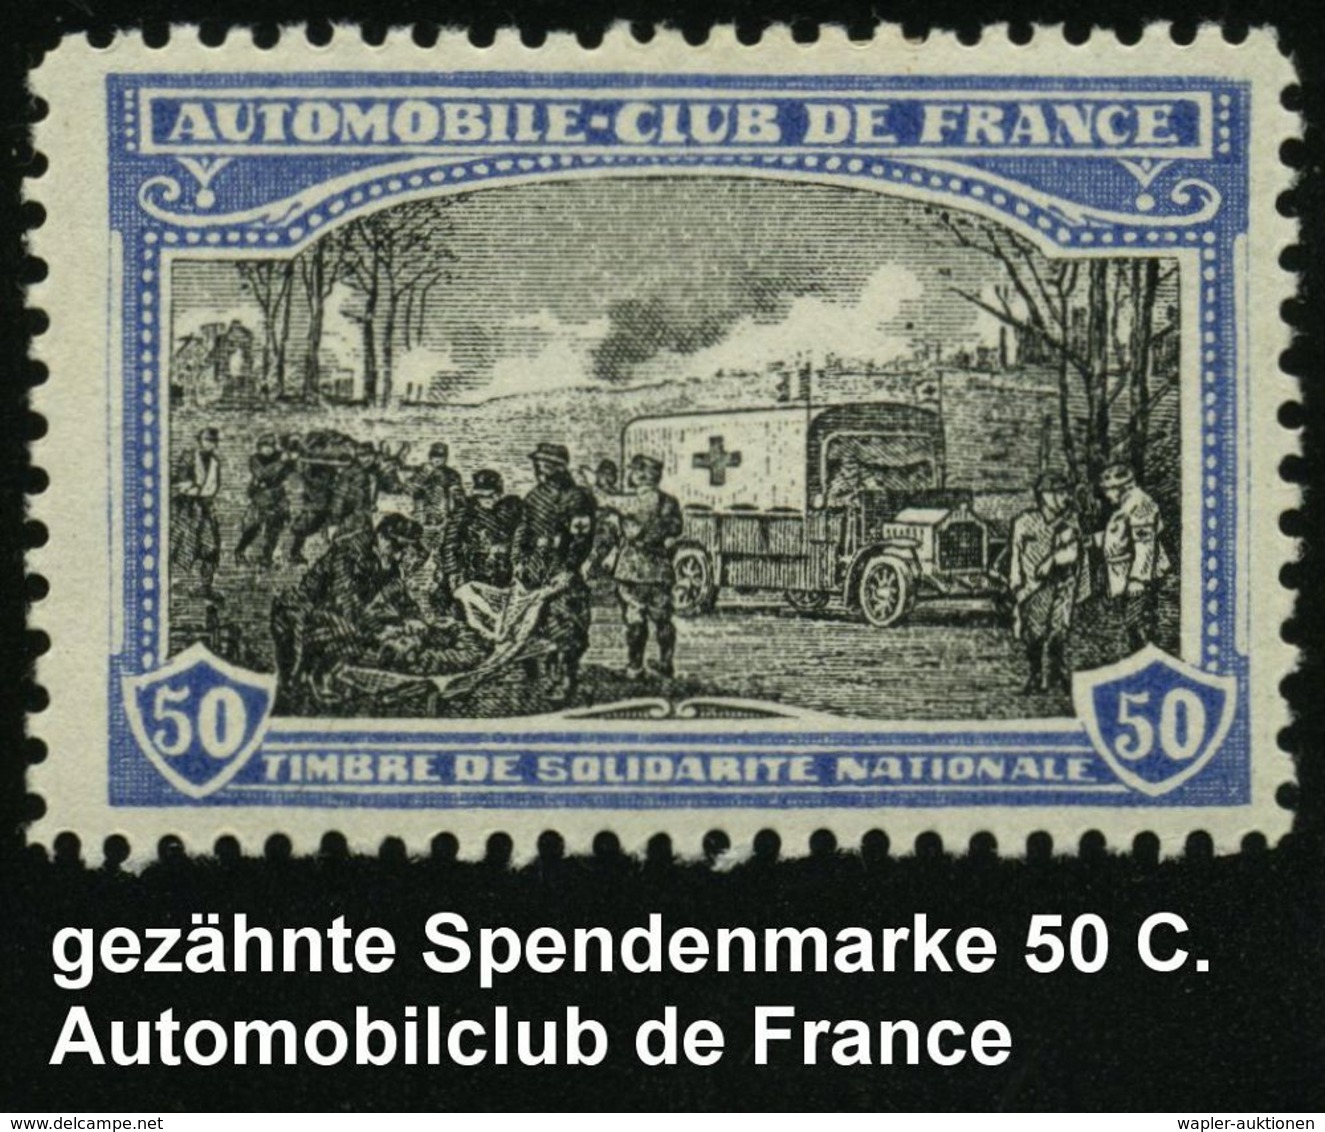 KRAFTFAHR-TRUPPEN / MILITÄR-KFZ. (ohne PANZER) : FRANKREICH 1914 50 C. Rotkreuz-Spendenmarken "AUTOMOBILE-CLUB DE FRANCE - Automobili